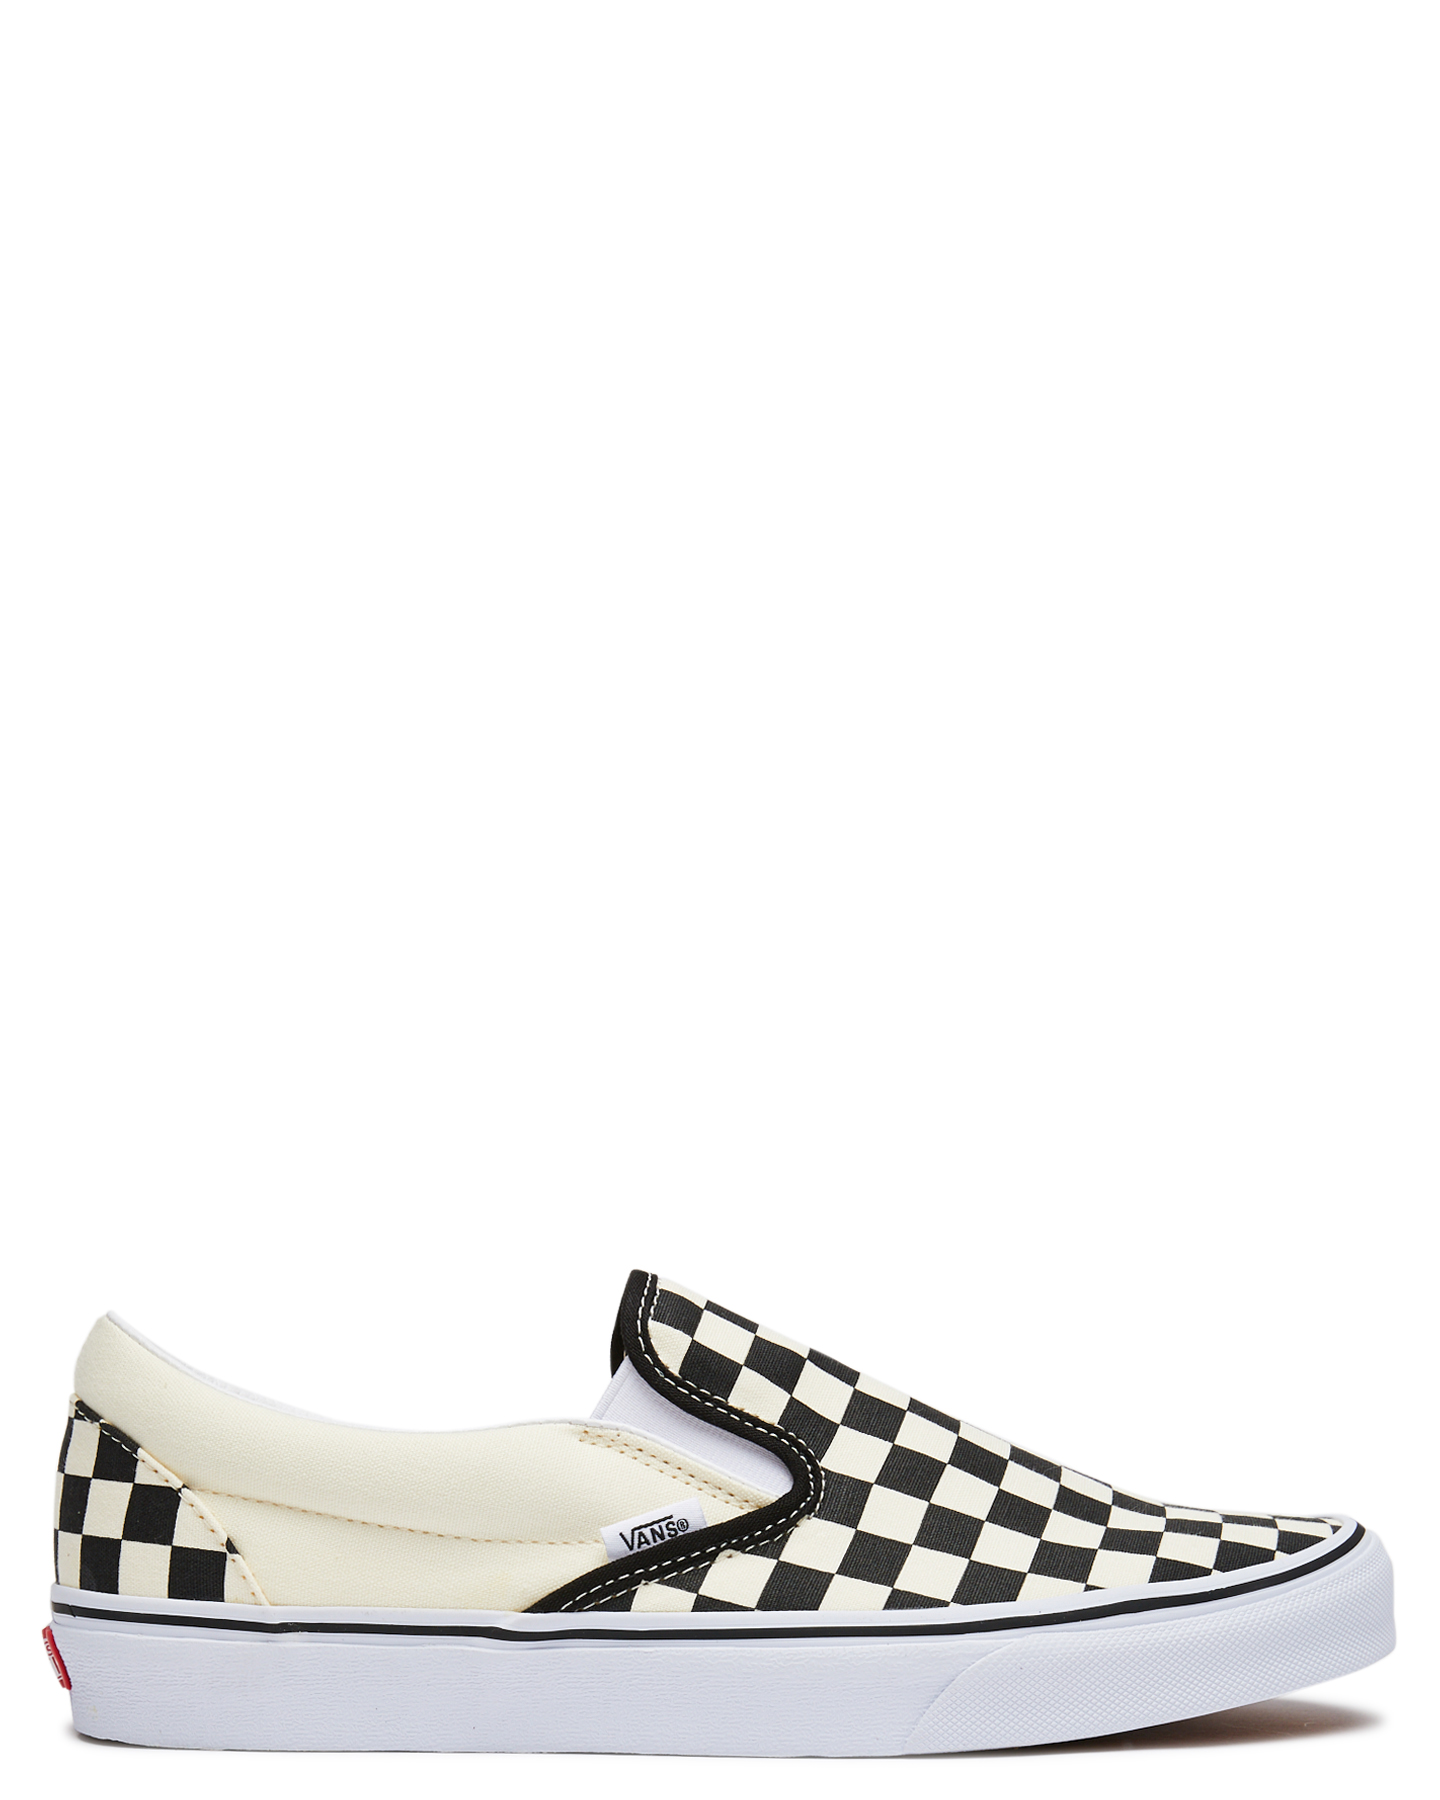 Vans Mens Classic Slip On Shoe Black White Checker